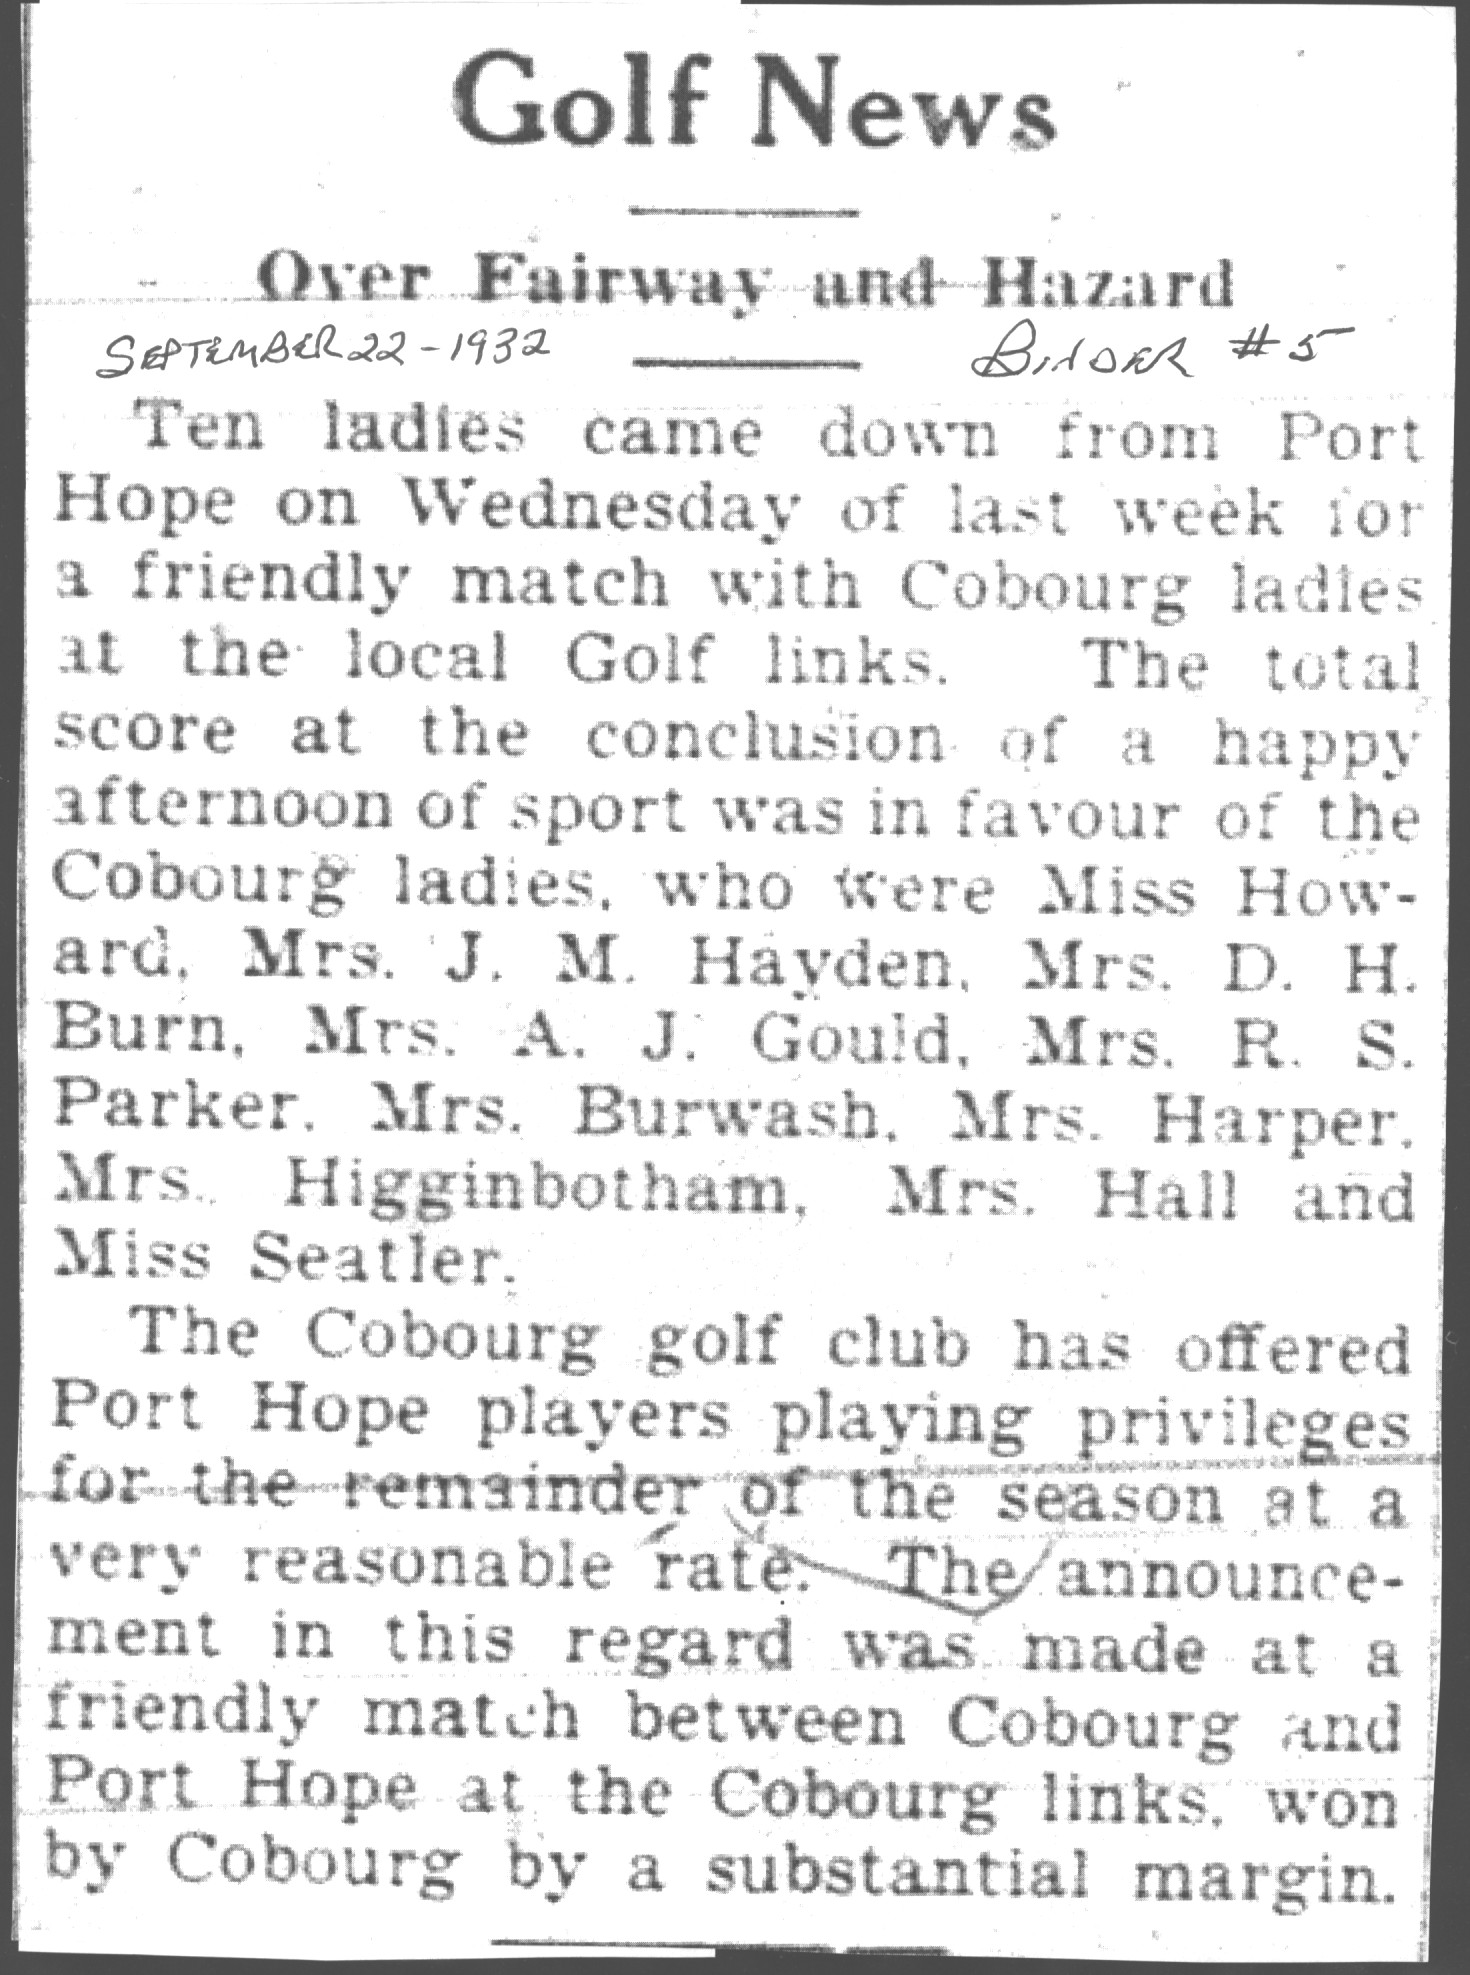 1932-09-22 Golf -PH Ladies at Cobourg club